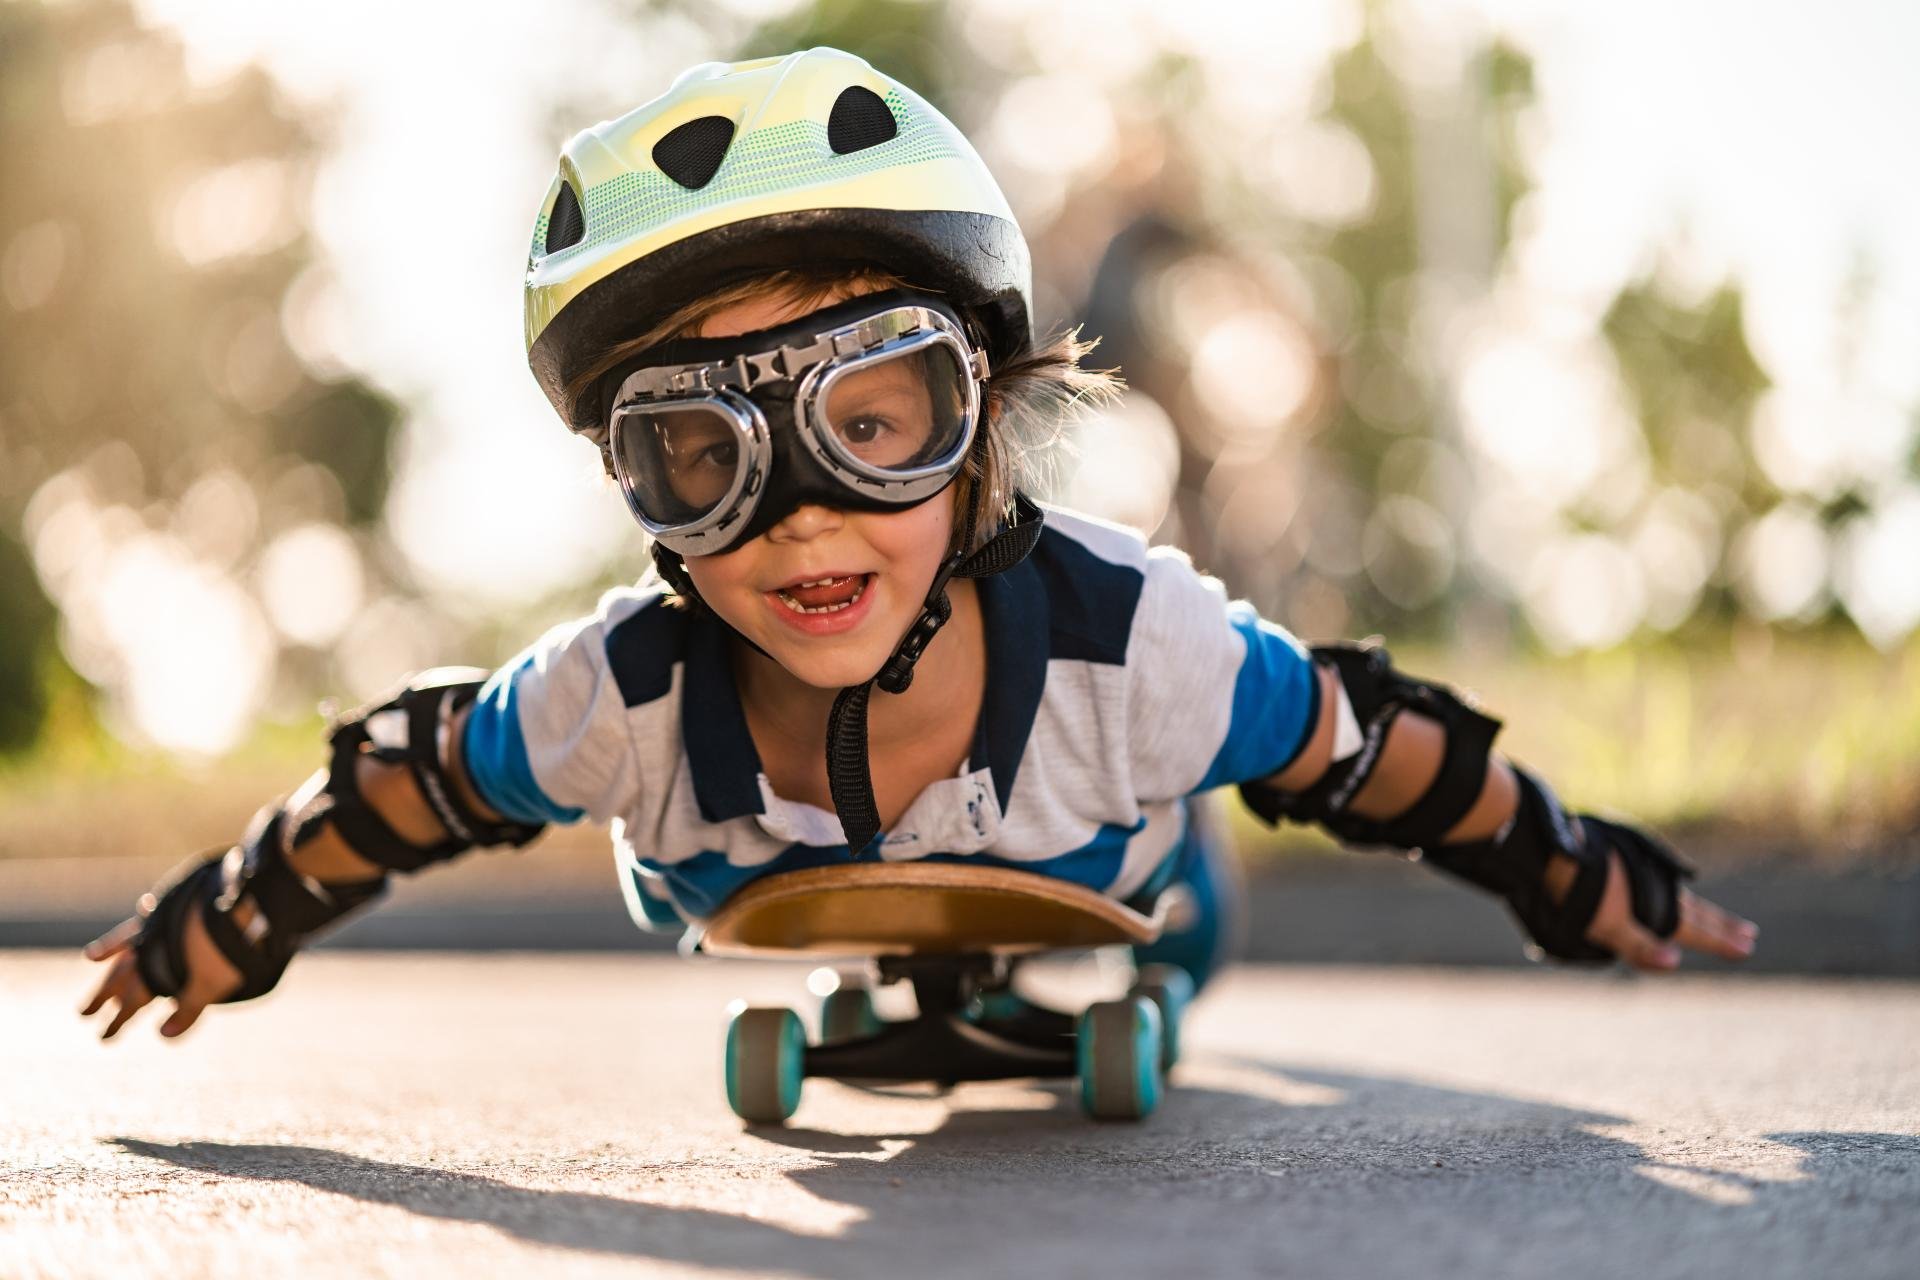 Foto van jongen met helm en vliegbril die met zijn armen wijd op een skateboard ligt